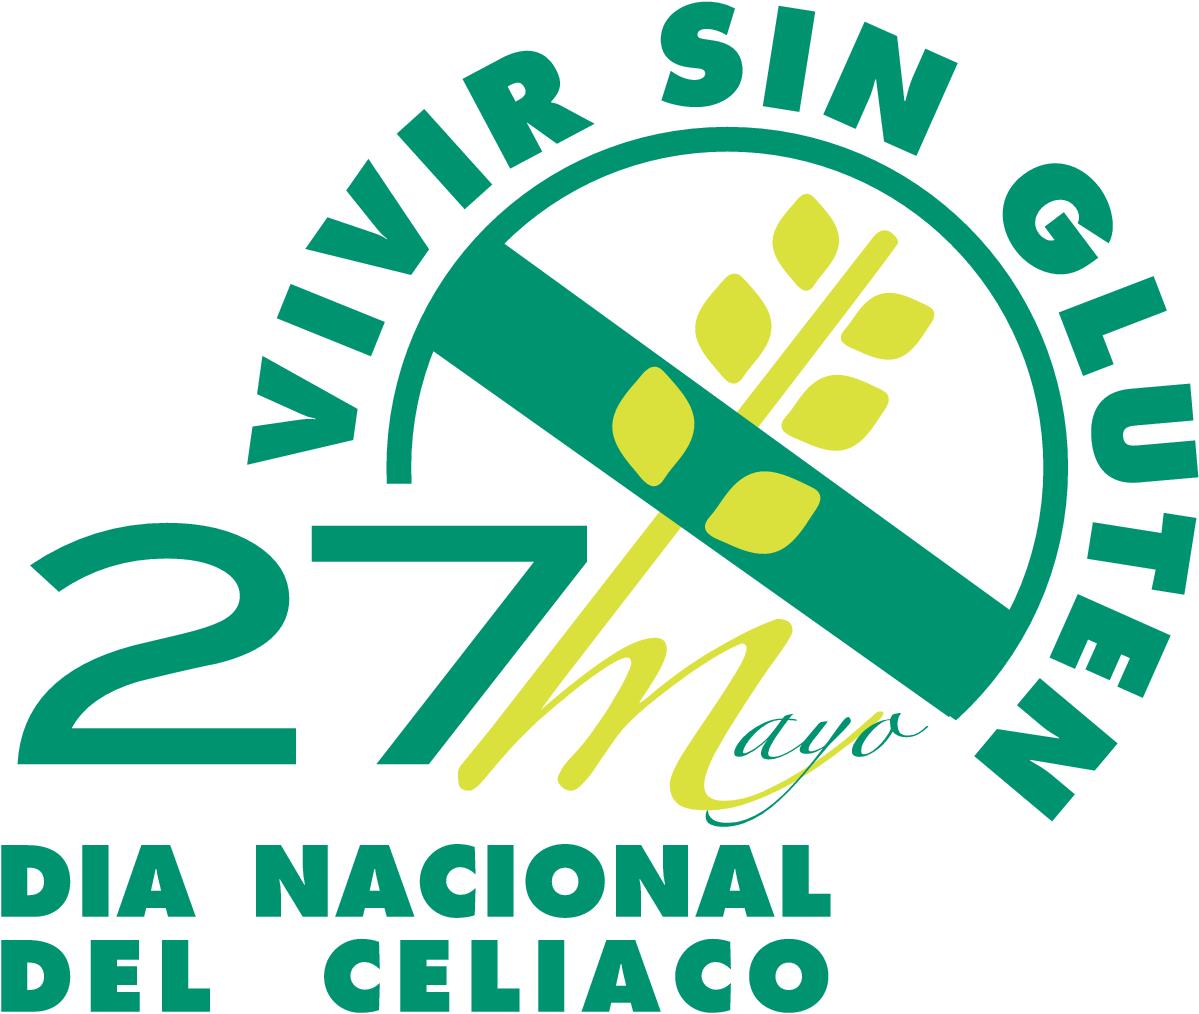 Imagen del cartel oficial del Día Nacional del Celiaco